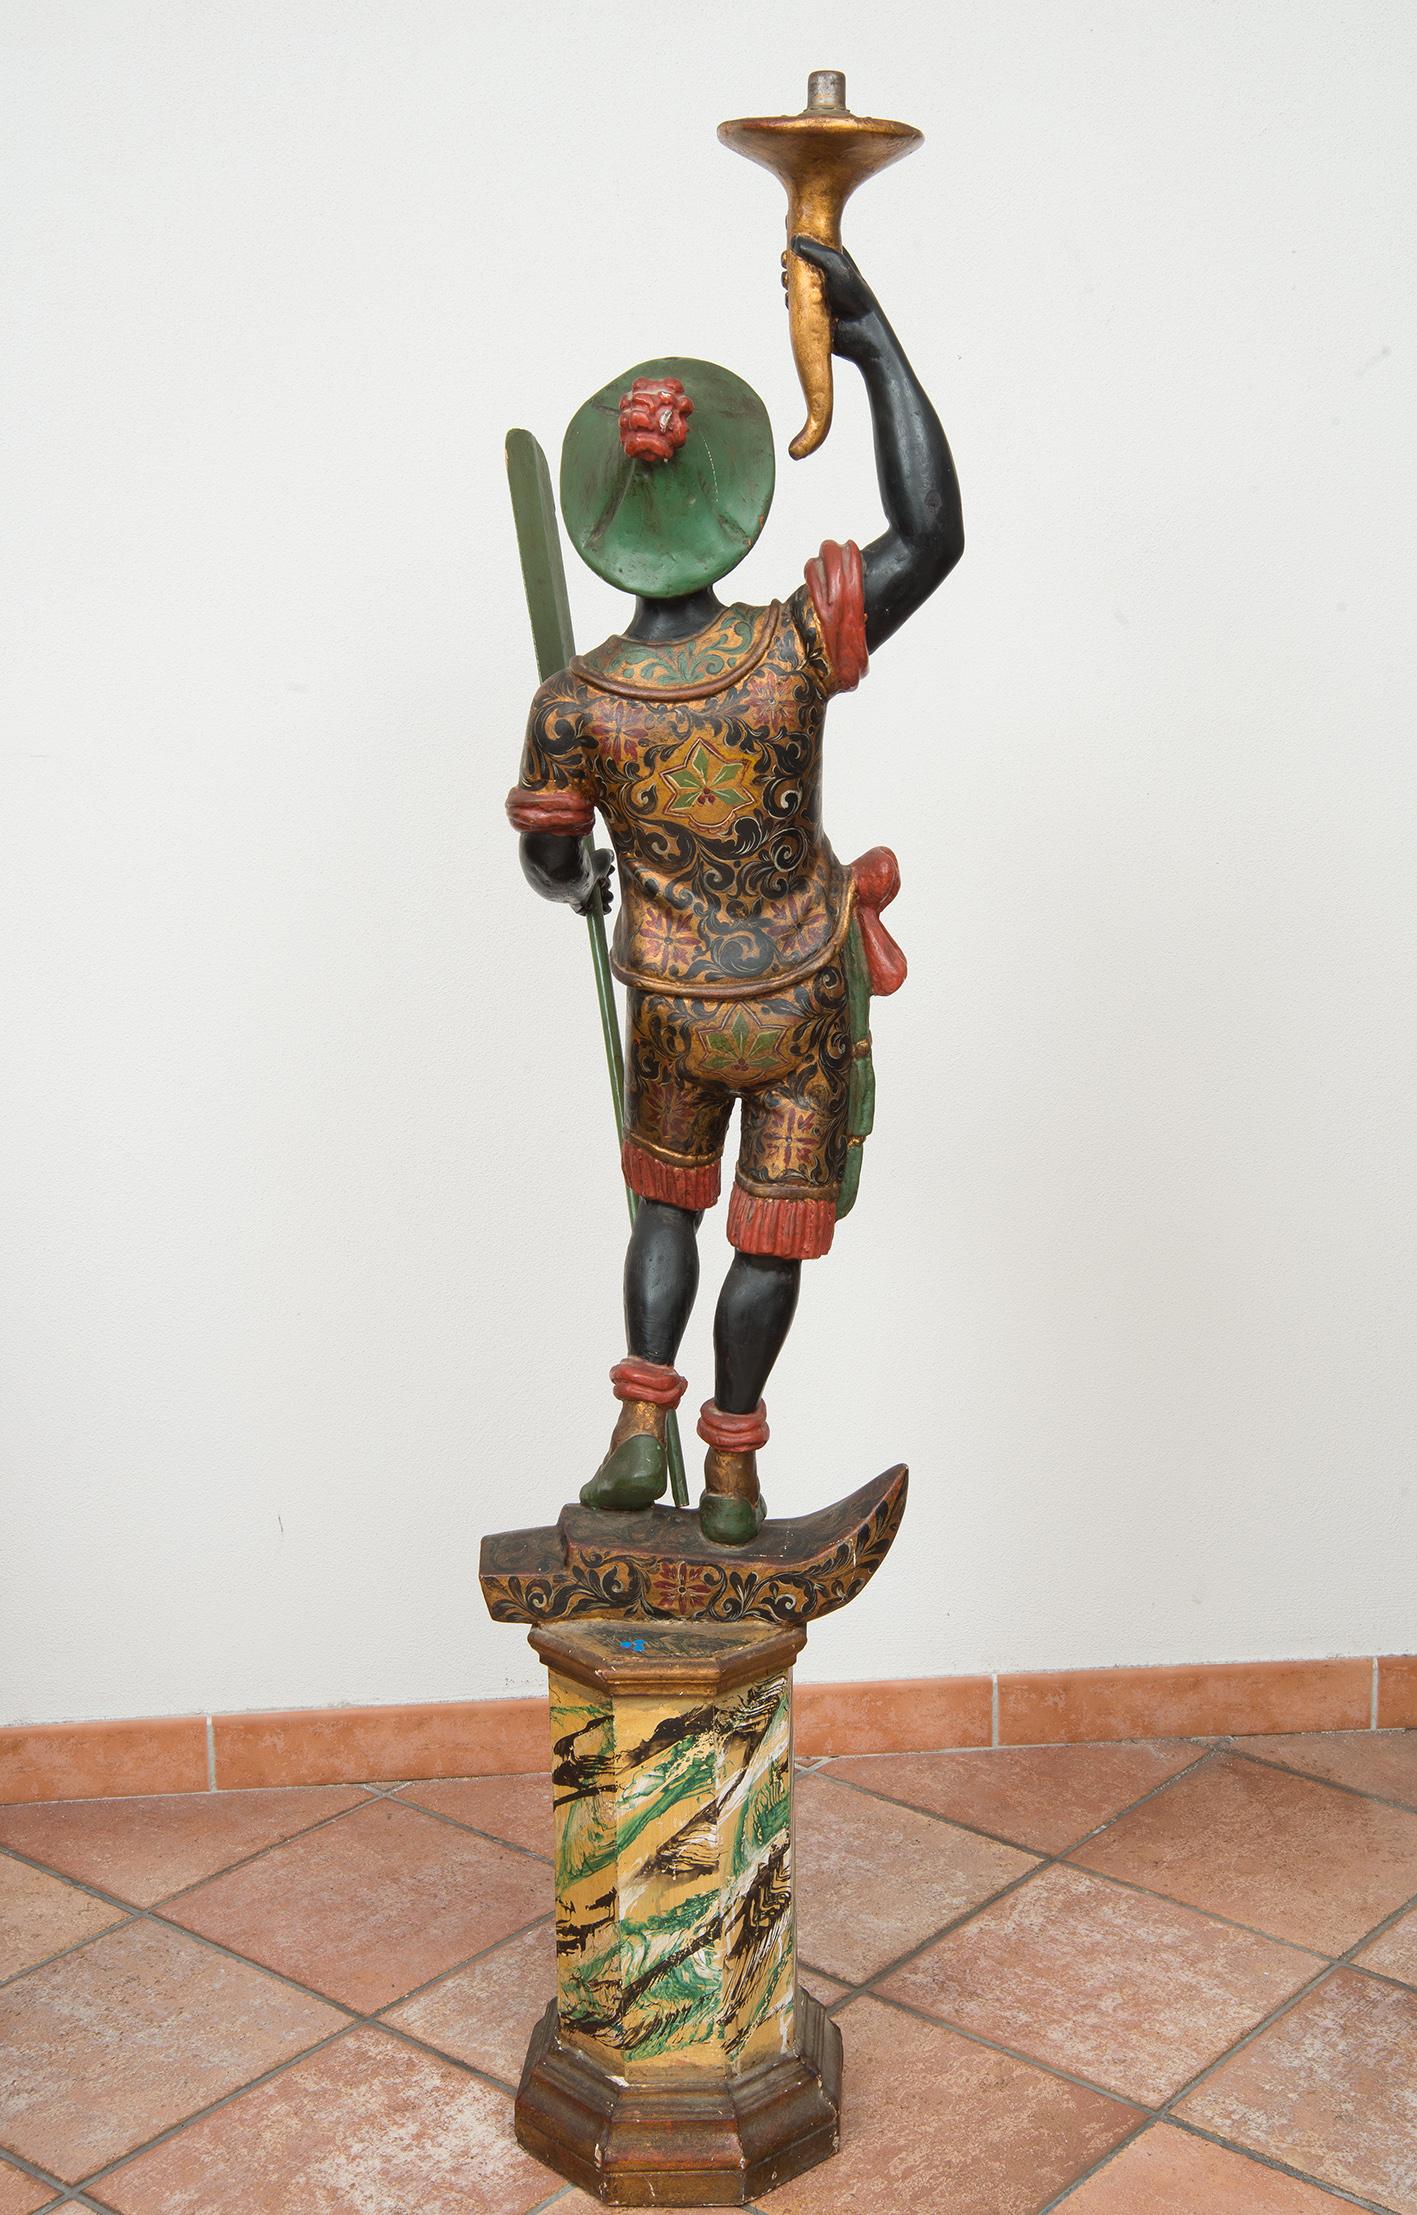 La sculpture finement exécutée représente un jeune homme africain portant un chapeau vert distinctif.

Cette œuvre appartient à la production vénitienne du début du XXe siècle  des sujets exotiques évocateurs du passé colonial de la République de